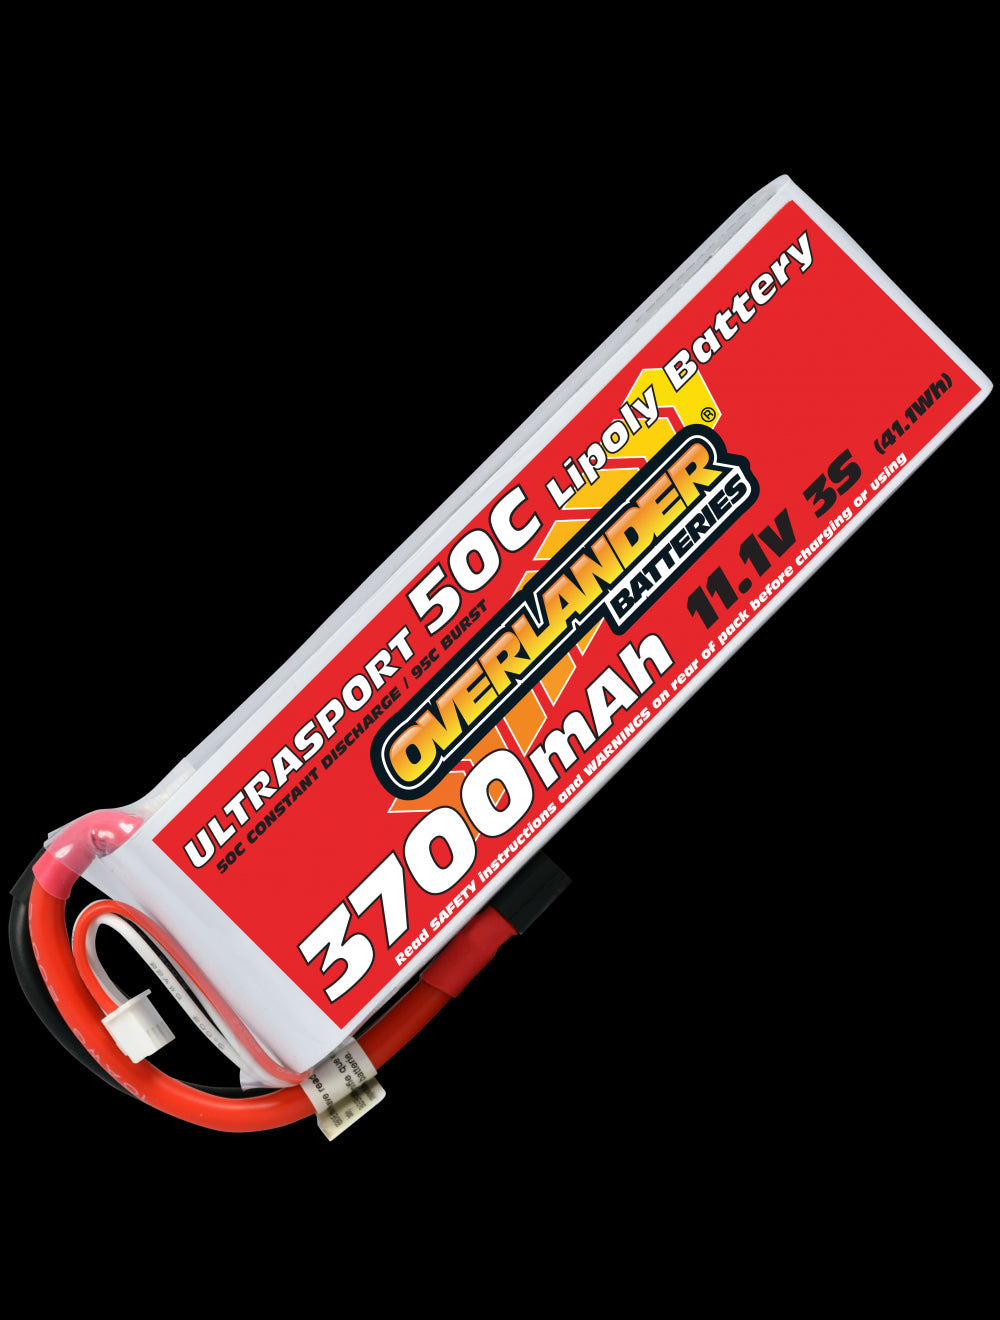 Overlander 3700mAh 11.1V 3S 50C Ultrasport LiPo Battery - EC5 Connector 2628